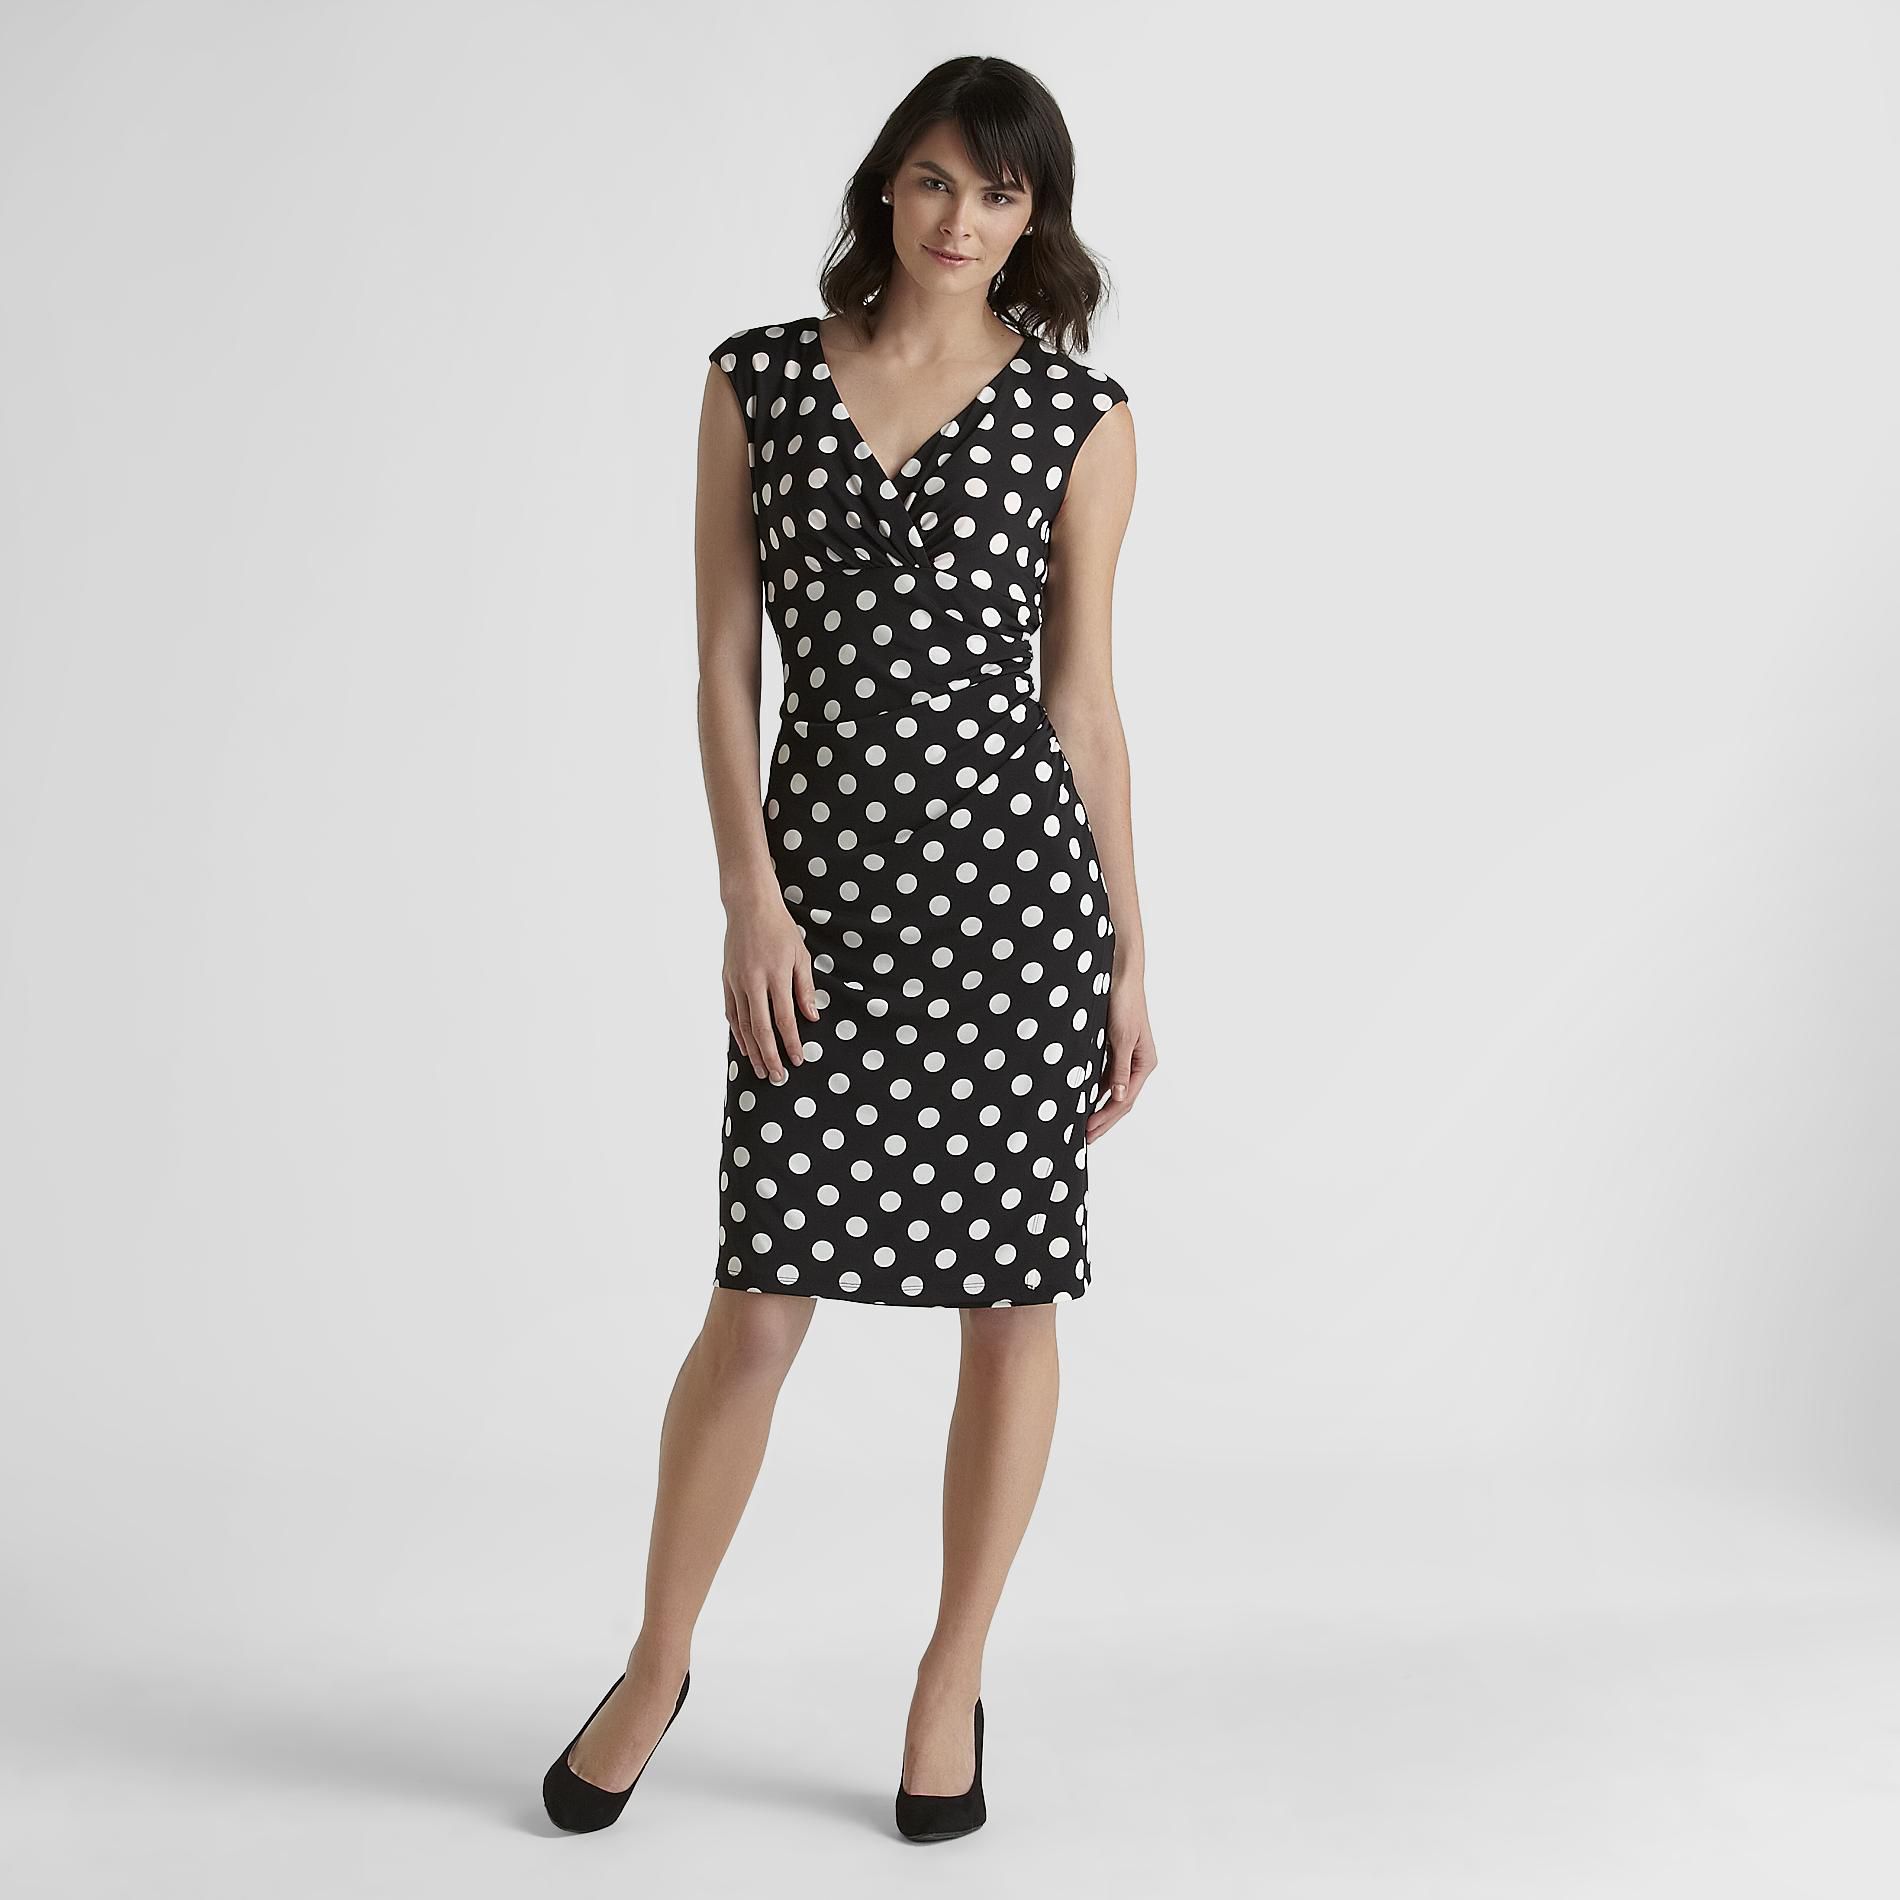 Women's Party Dress - Polka Dot Black/White 10